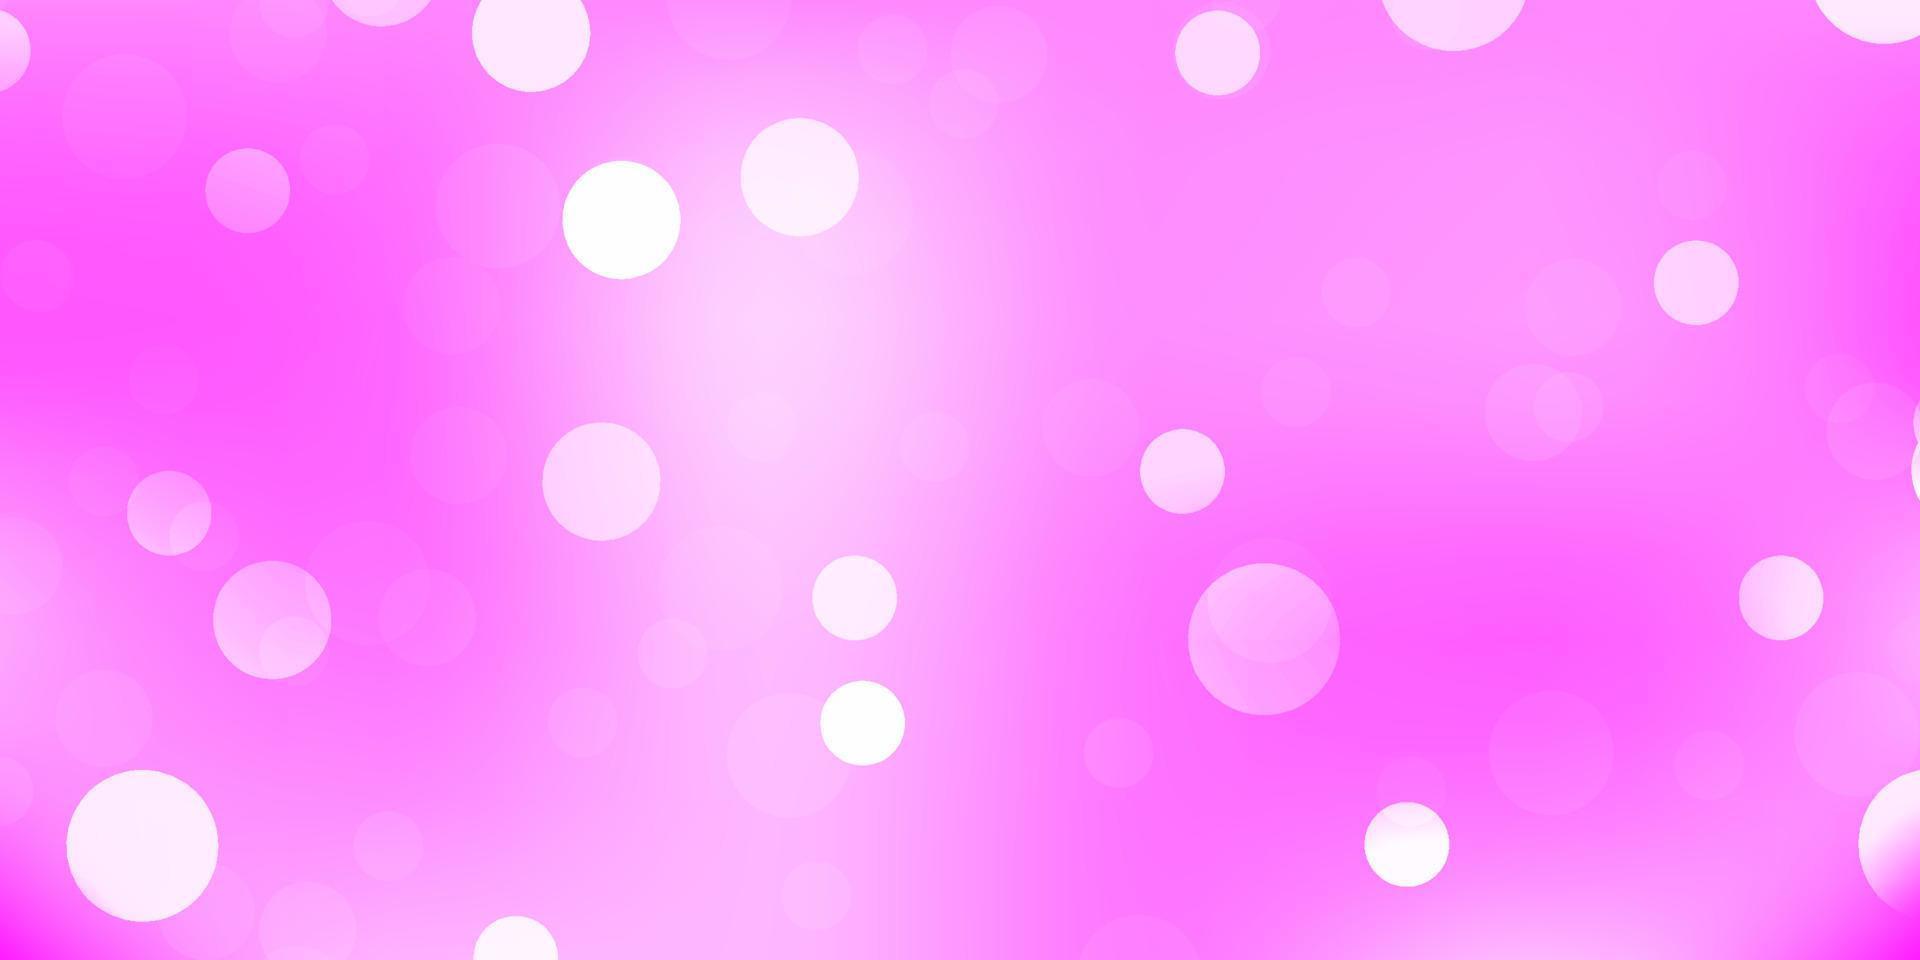 sfondo vettoriale rosa chiaro con forme casuali.